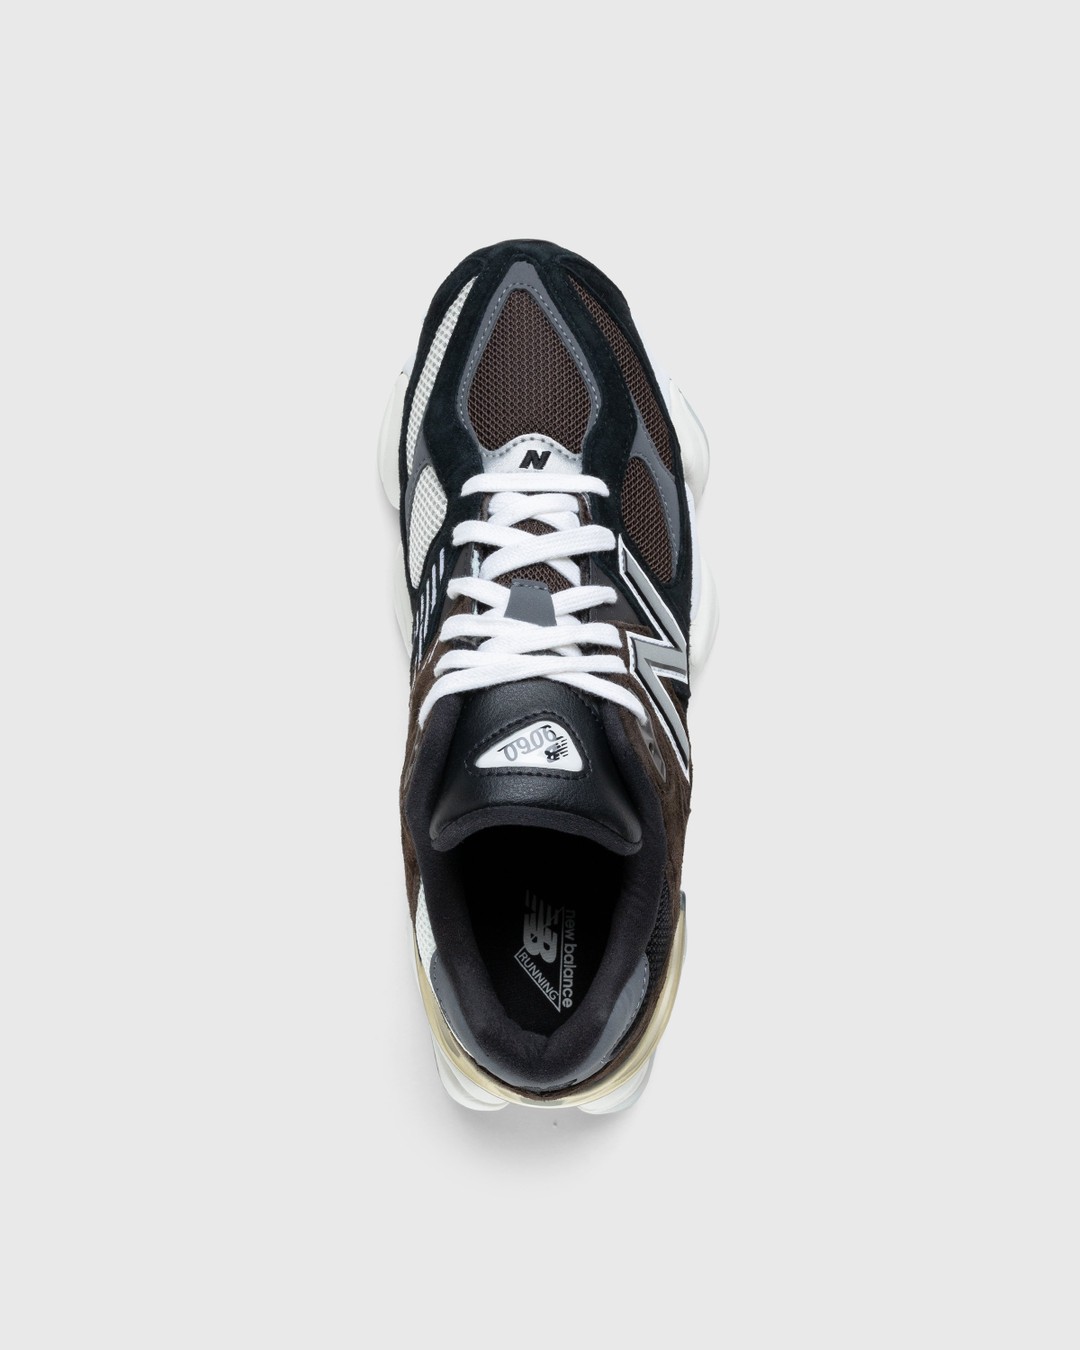 New Balance – U9060BRN Dark Brown - Low Top Sneakers - Brown - Image 5